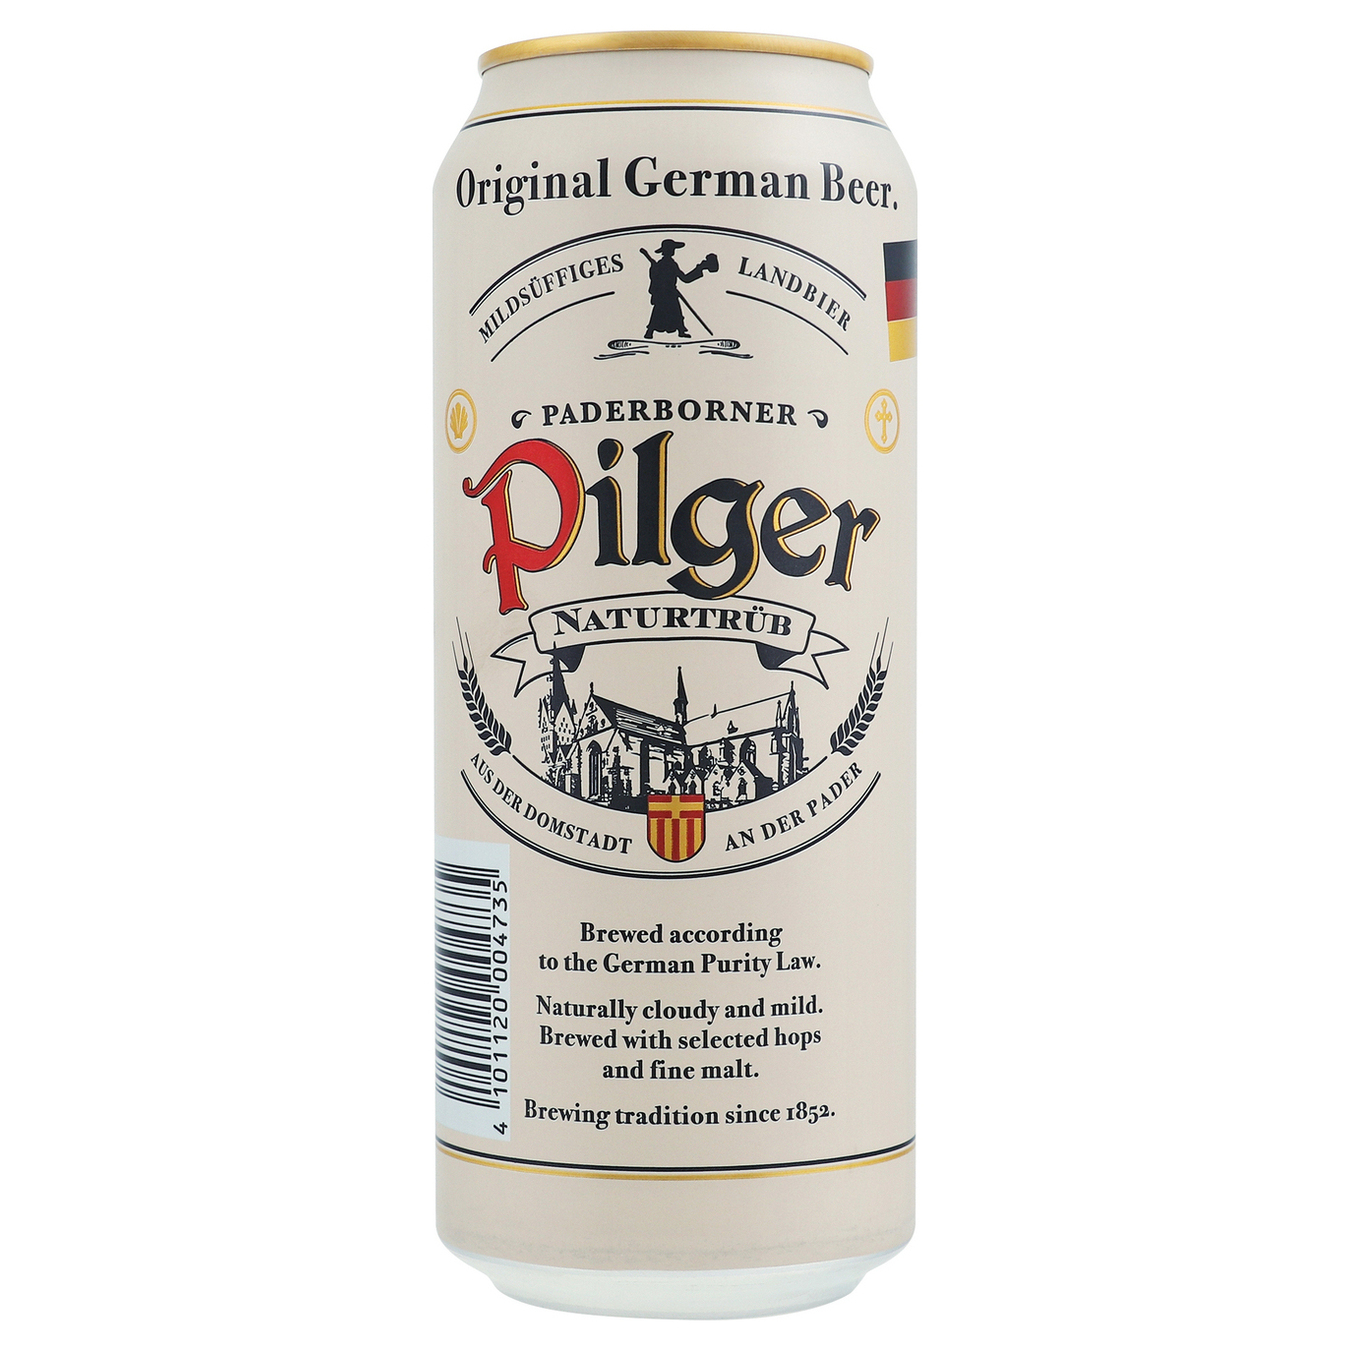 Пиво Paderborner Pilger світле нефільтроване пастеризоване 5% 0.5л